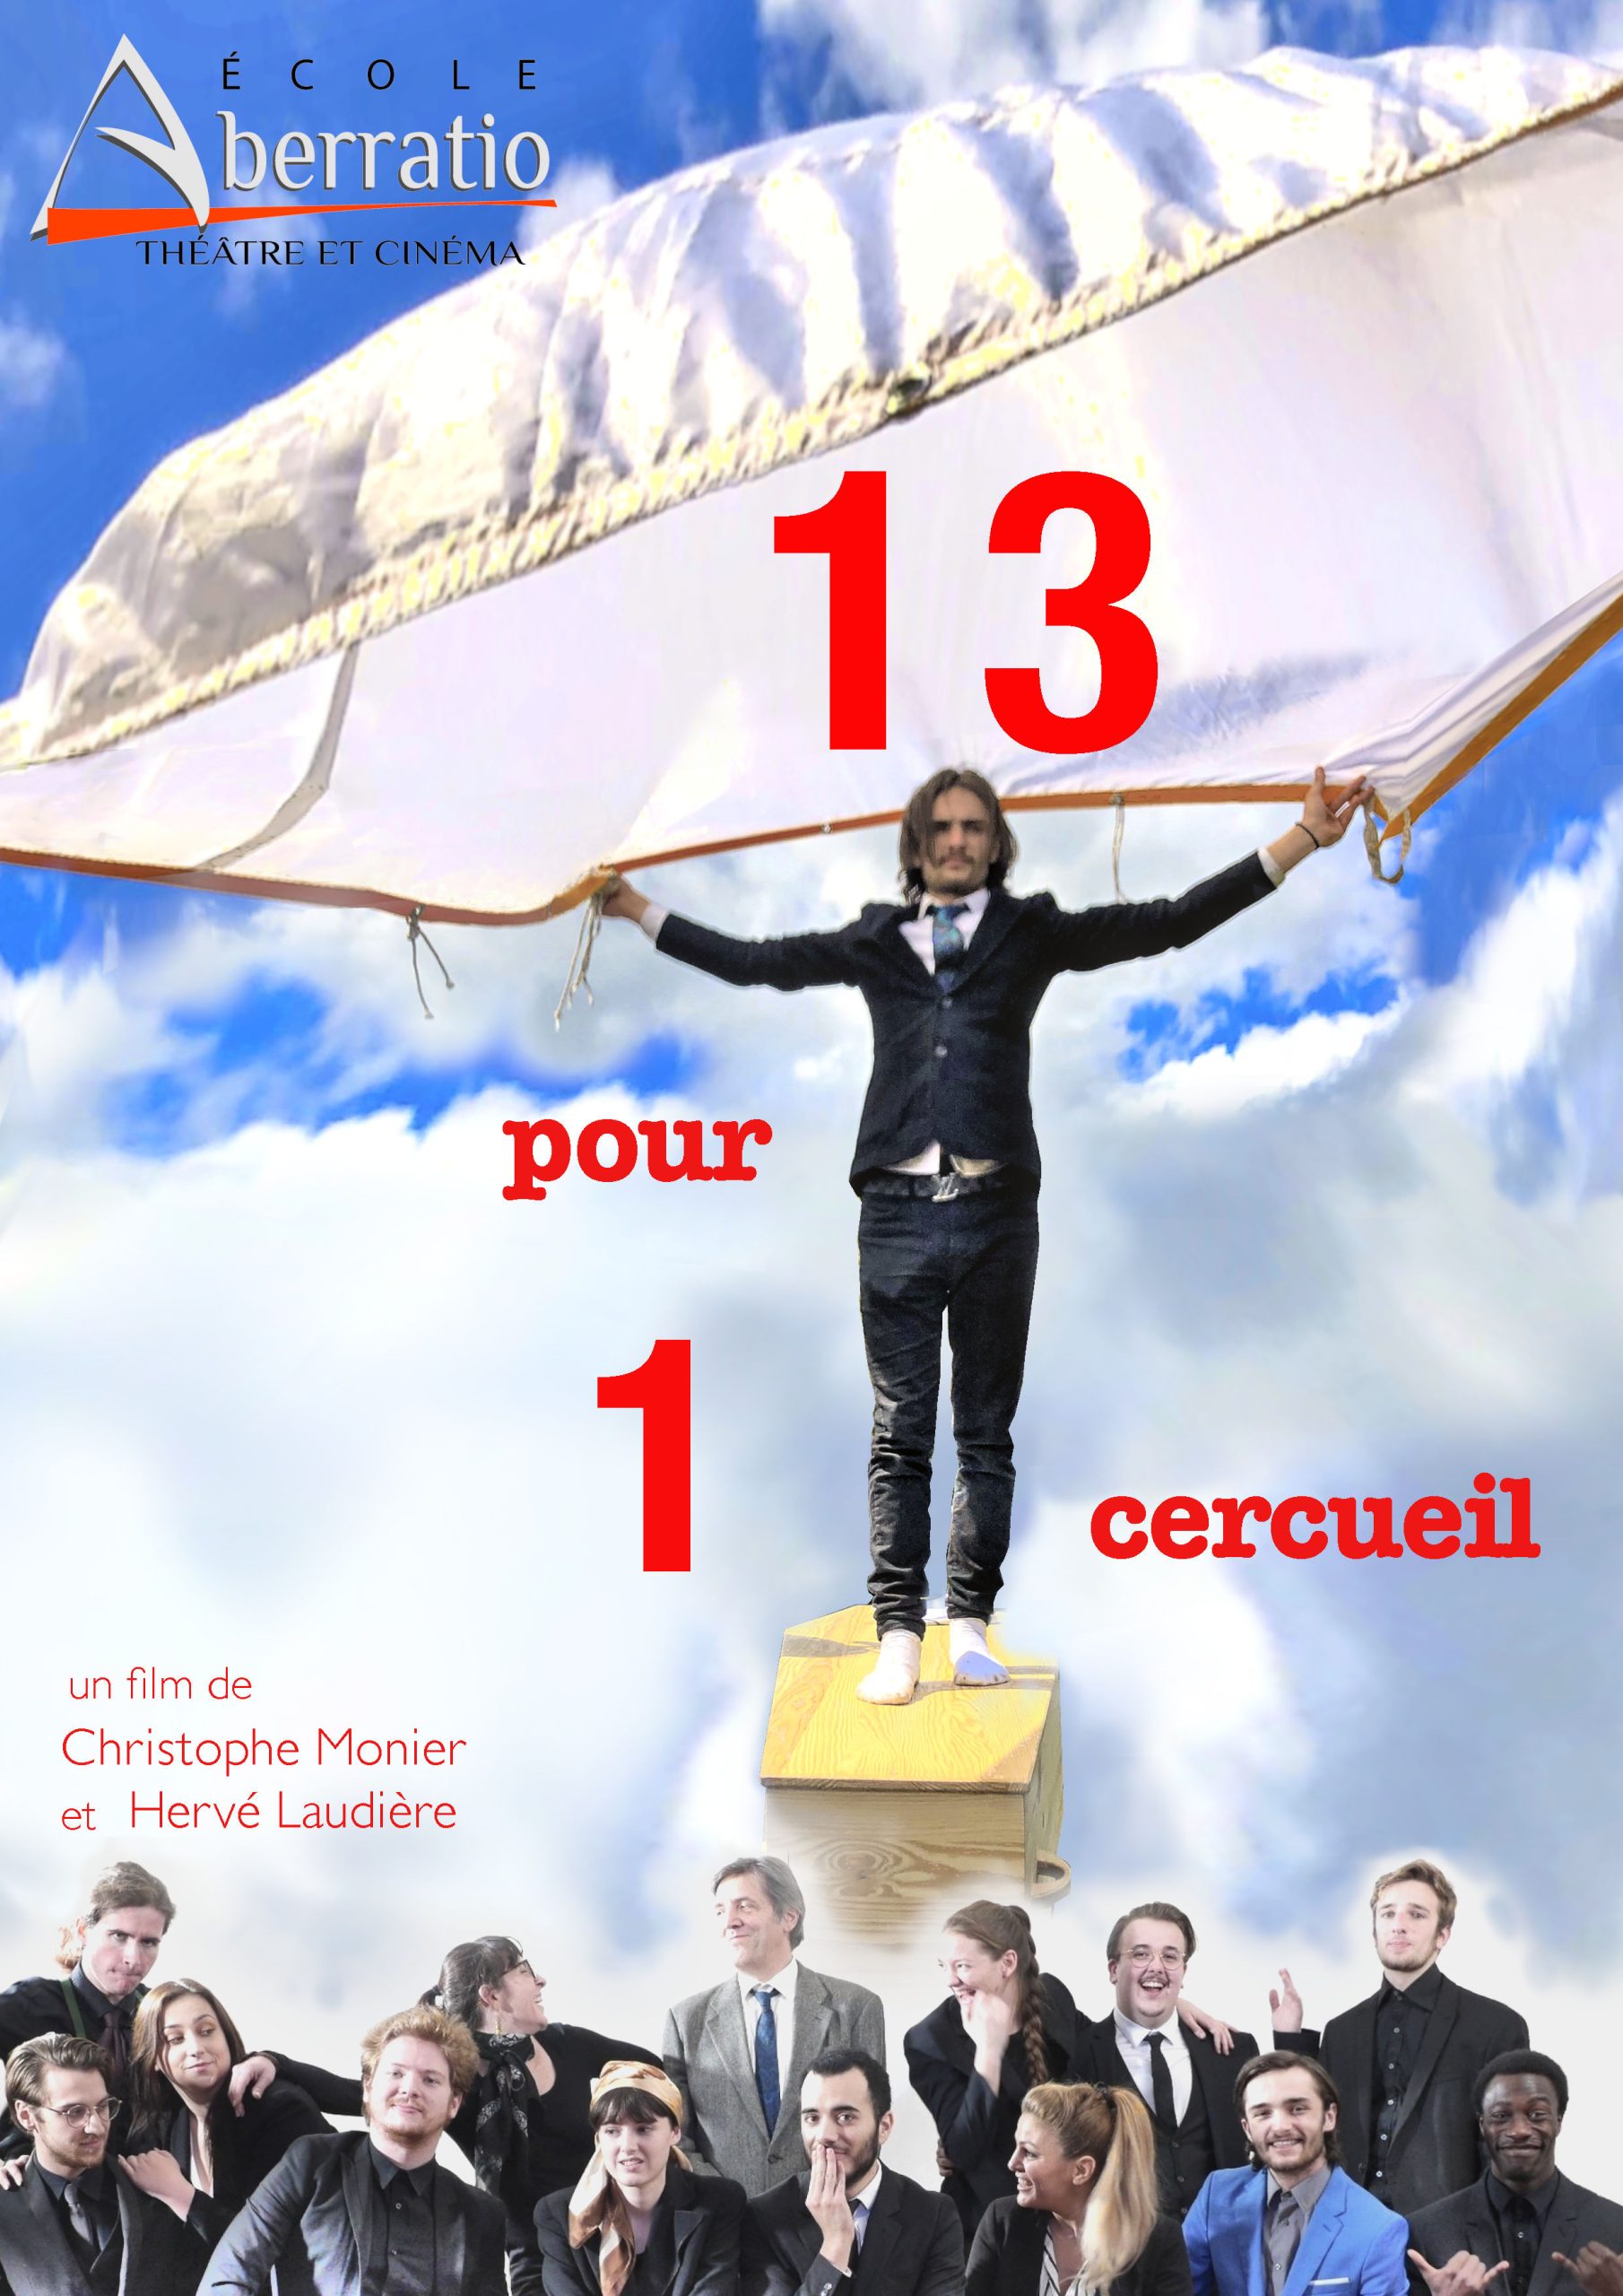 image du film "13 pour un cercueil" de Christophe Monier